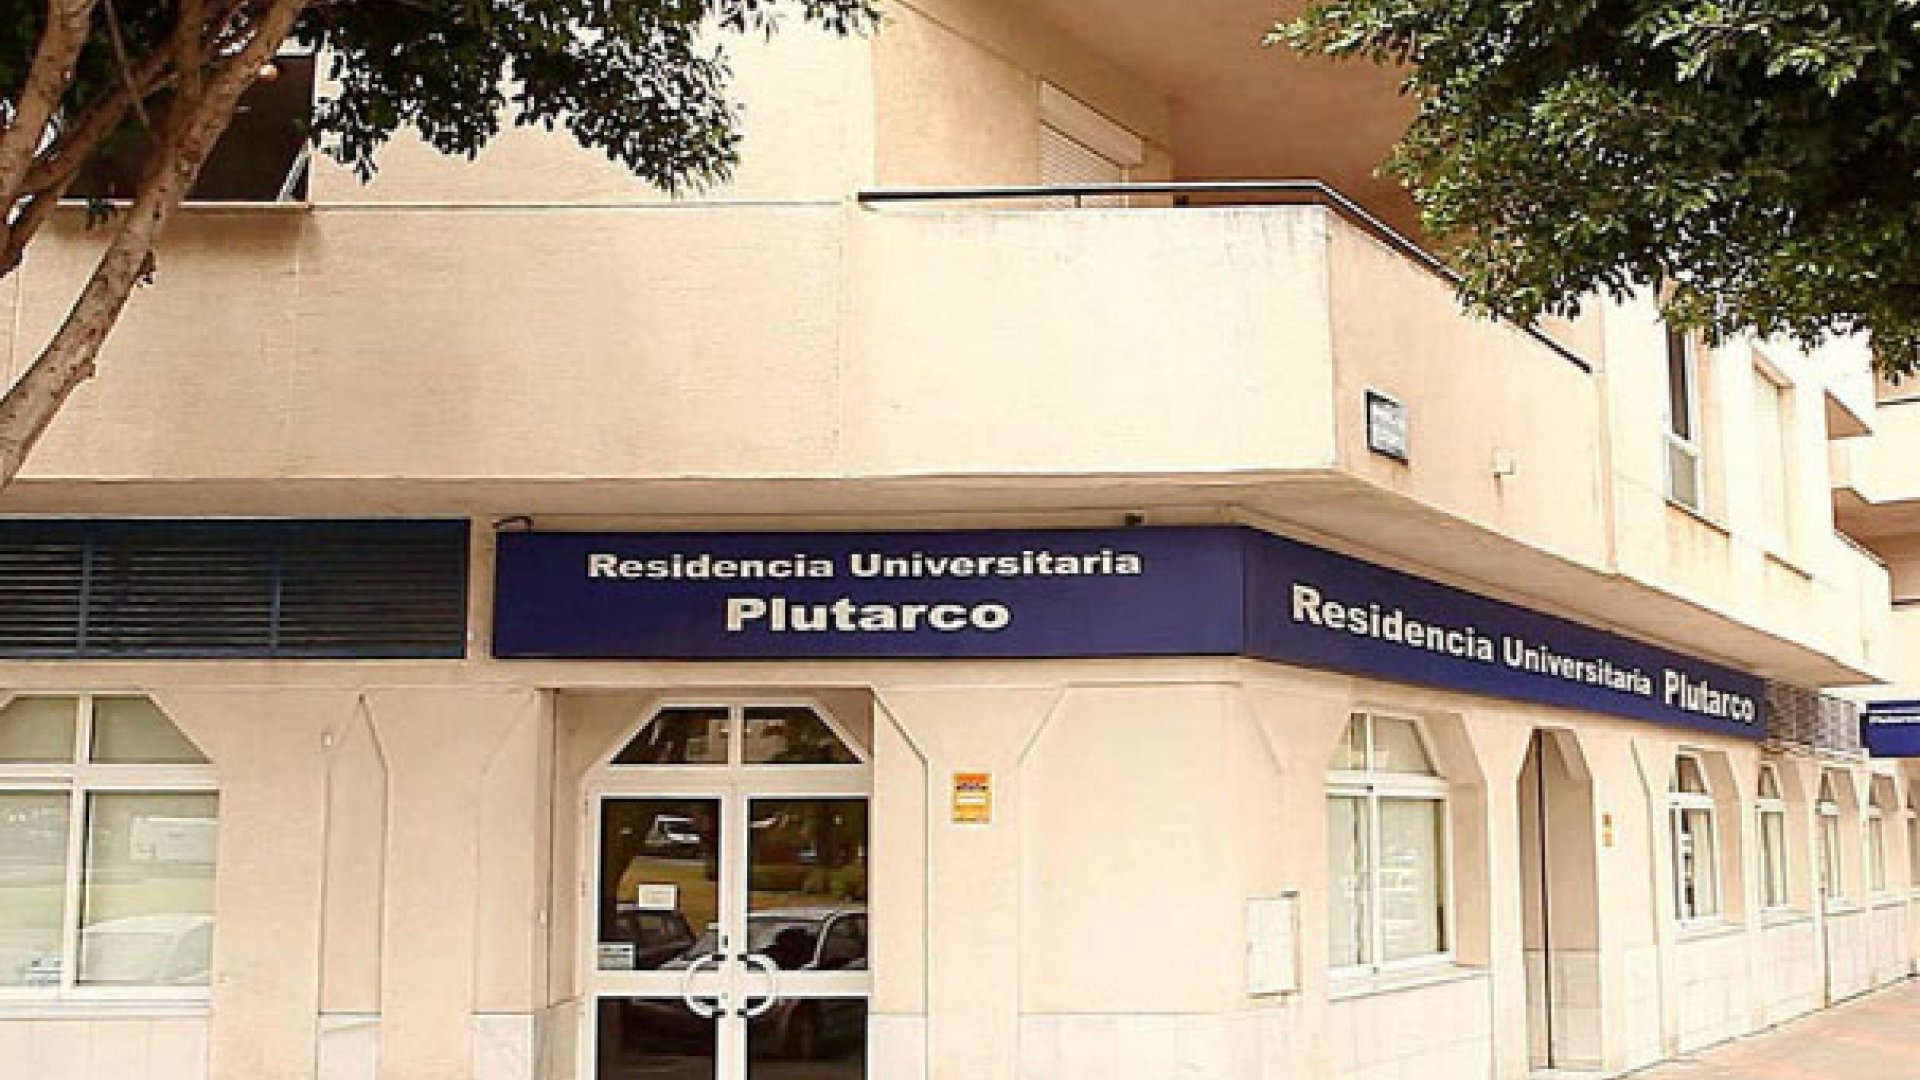 Residencia universitaria Plutarco